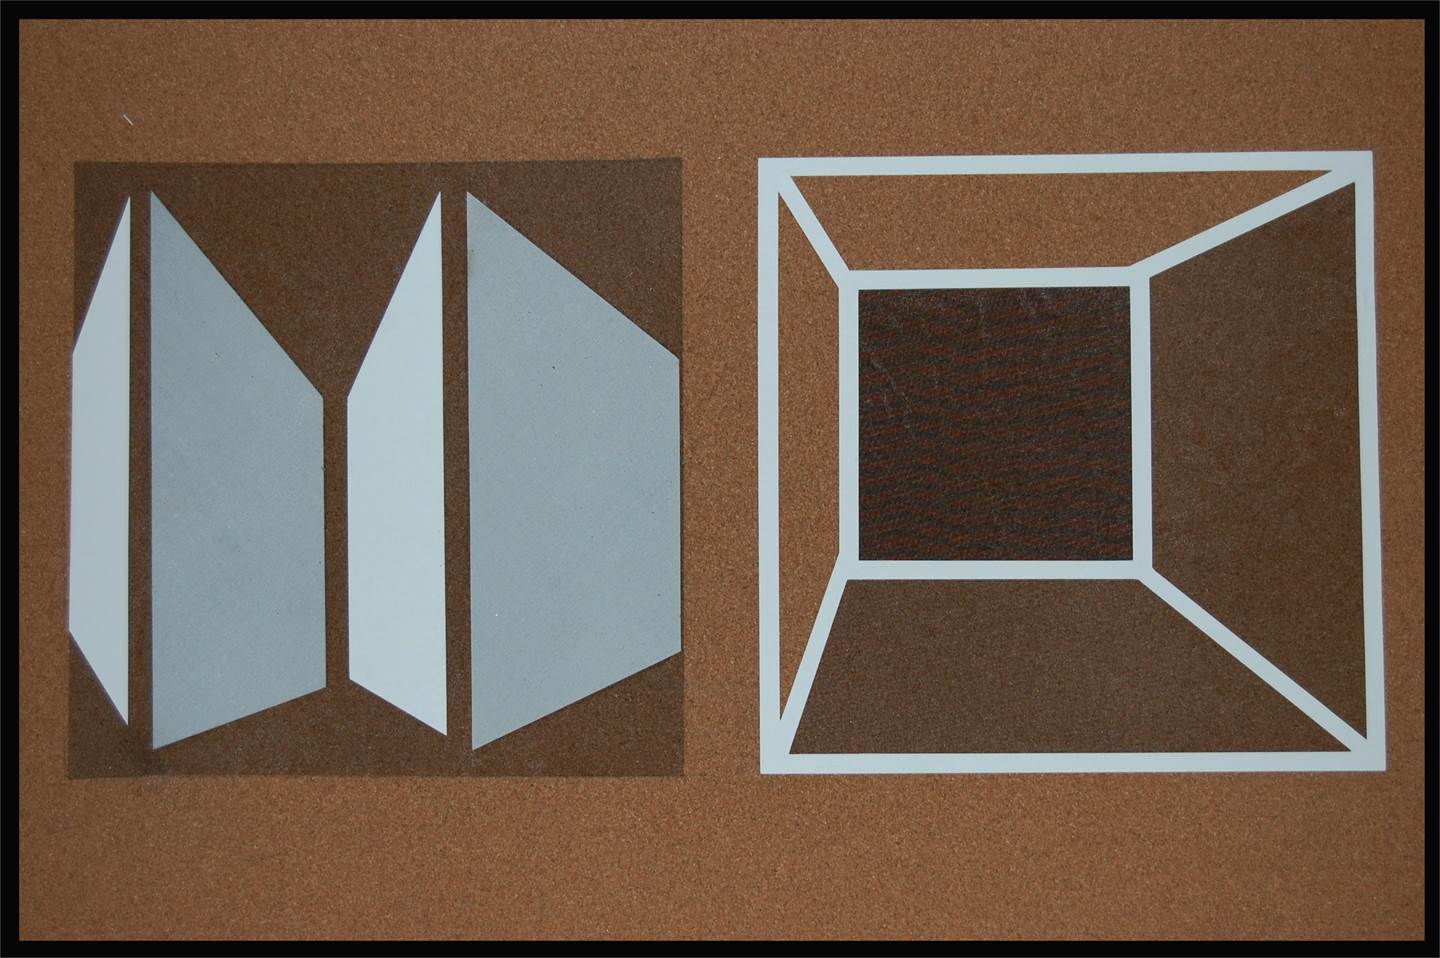 Boxes, original Resumen Técnica Mixta Pintura de David Barnes